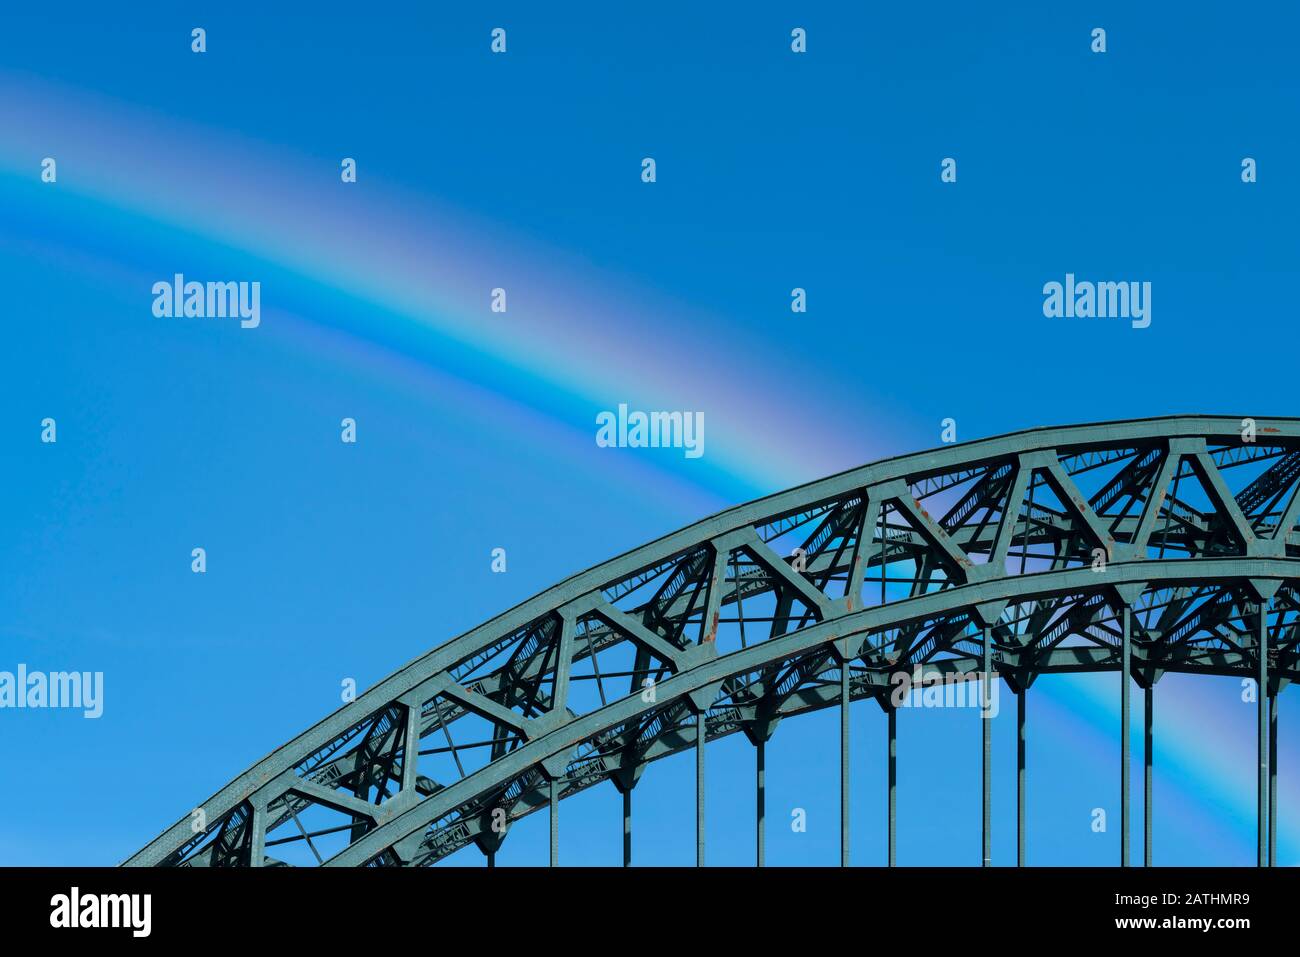 La courbe du pont Tyne, miroir par la courbe d'un arc-en-ciel, Newcastle upon Tyne, Angleterre Banque D'Images